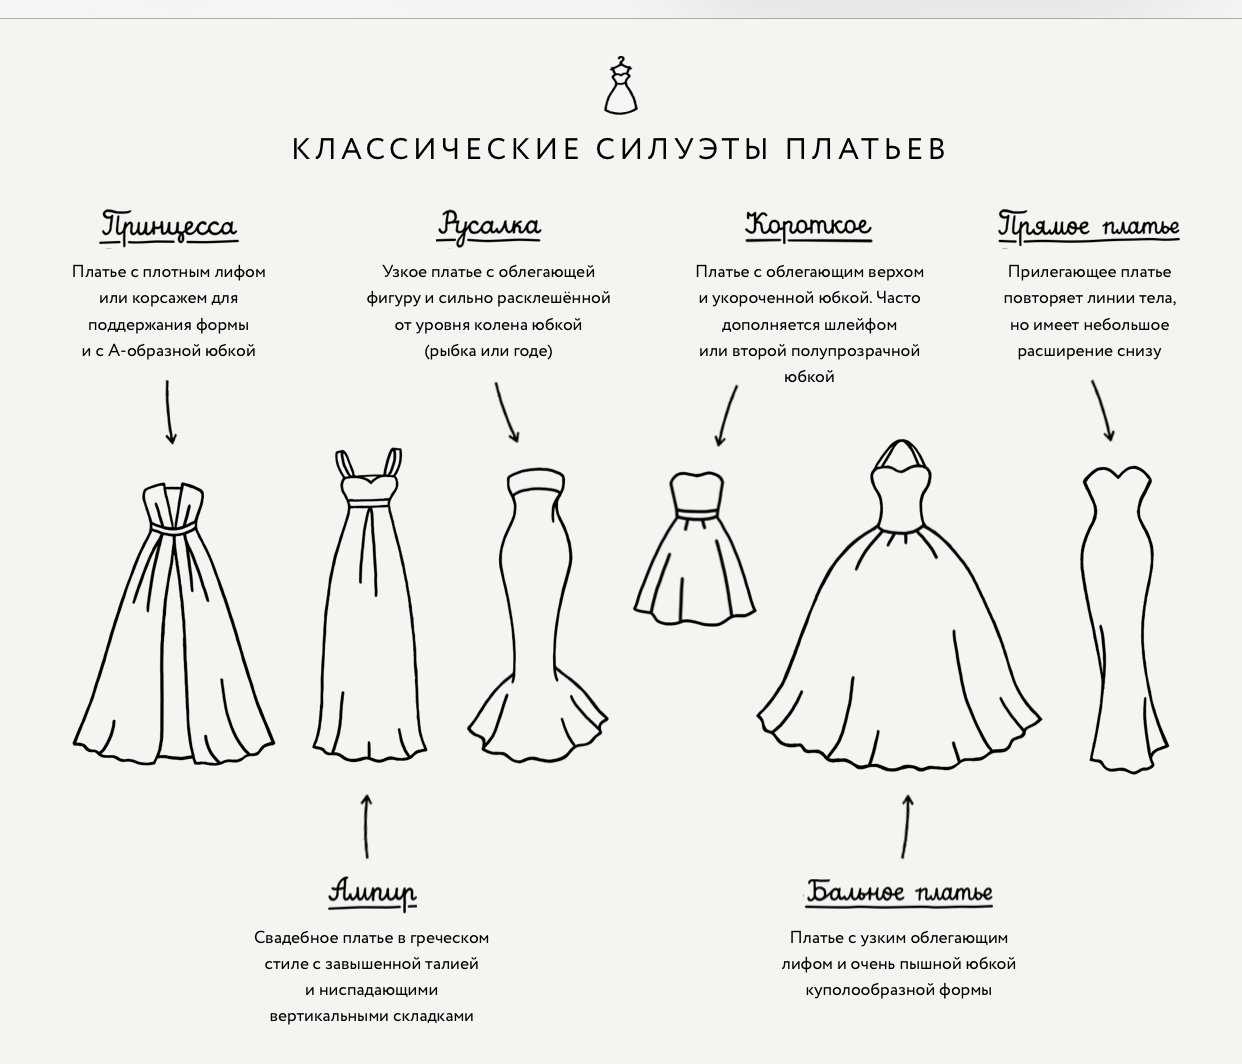 Материалы для платьев и их названия